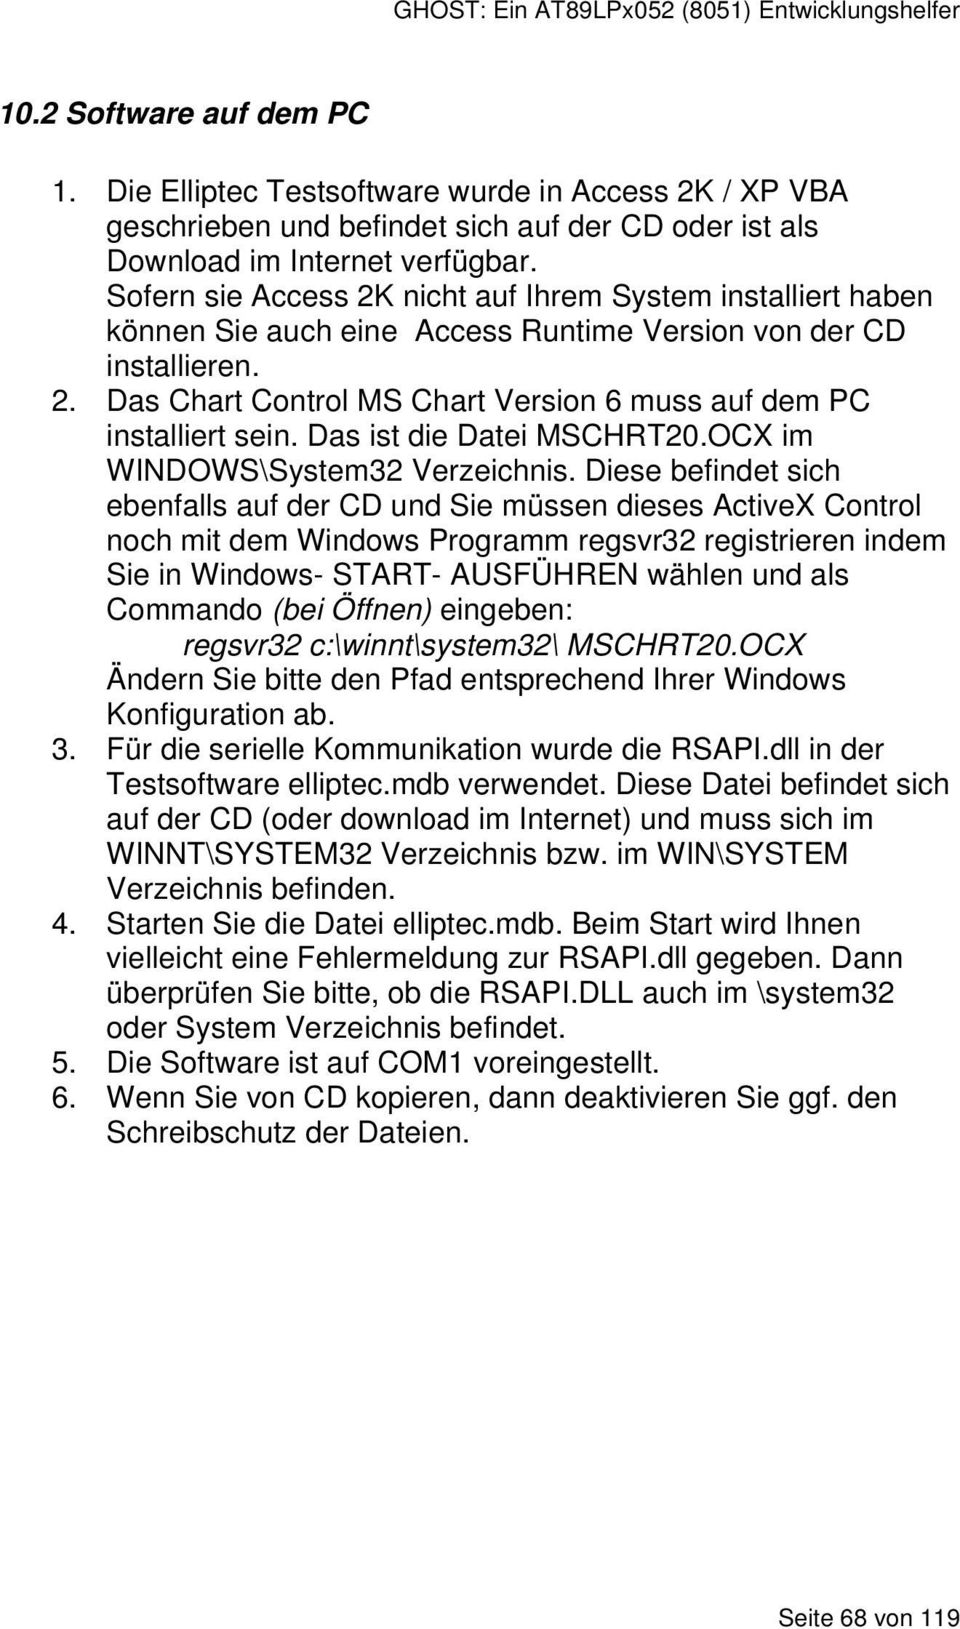 Das ist die Datei MSCHRT20.OCX im WINDOWS\System32 Verzeichnis.